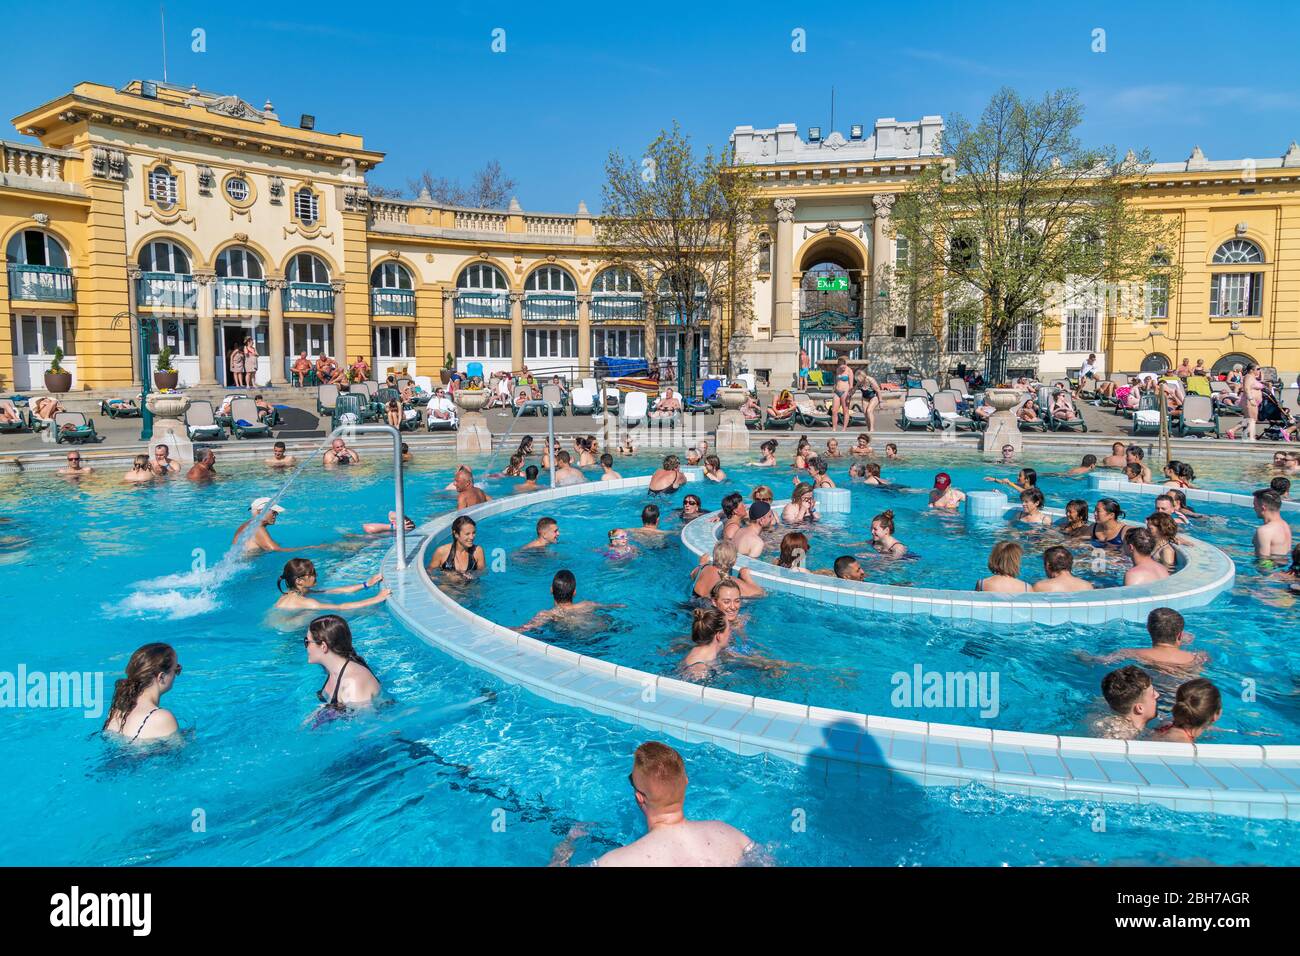 BUDAPEST - 3 AVRIL 2019 : les touristes et les habitants apprécient les célèbres bains de Szechenyi lors d'une belle journée de printemps. C'est une attraction touristique célèbre. Banque D'Images